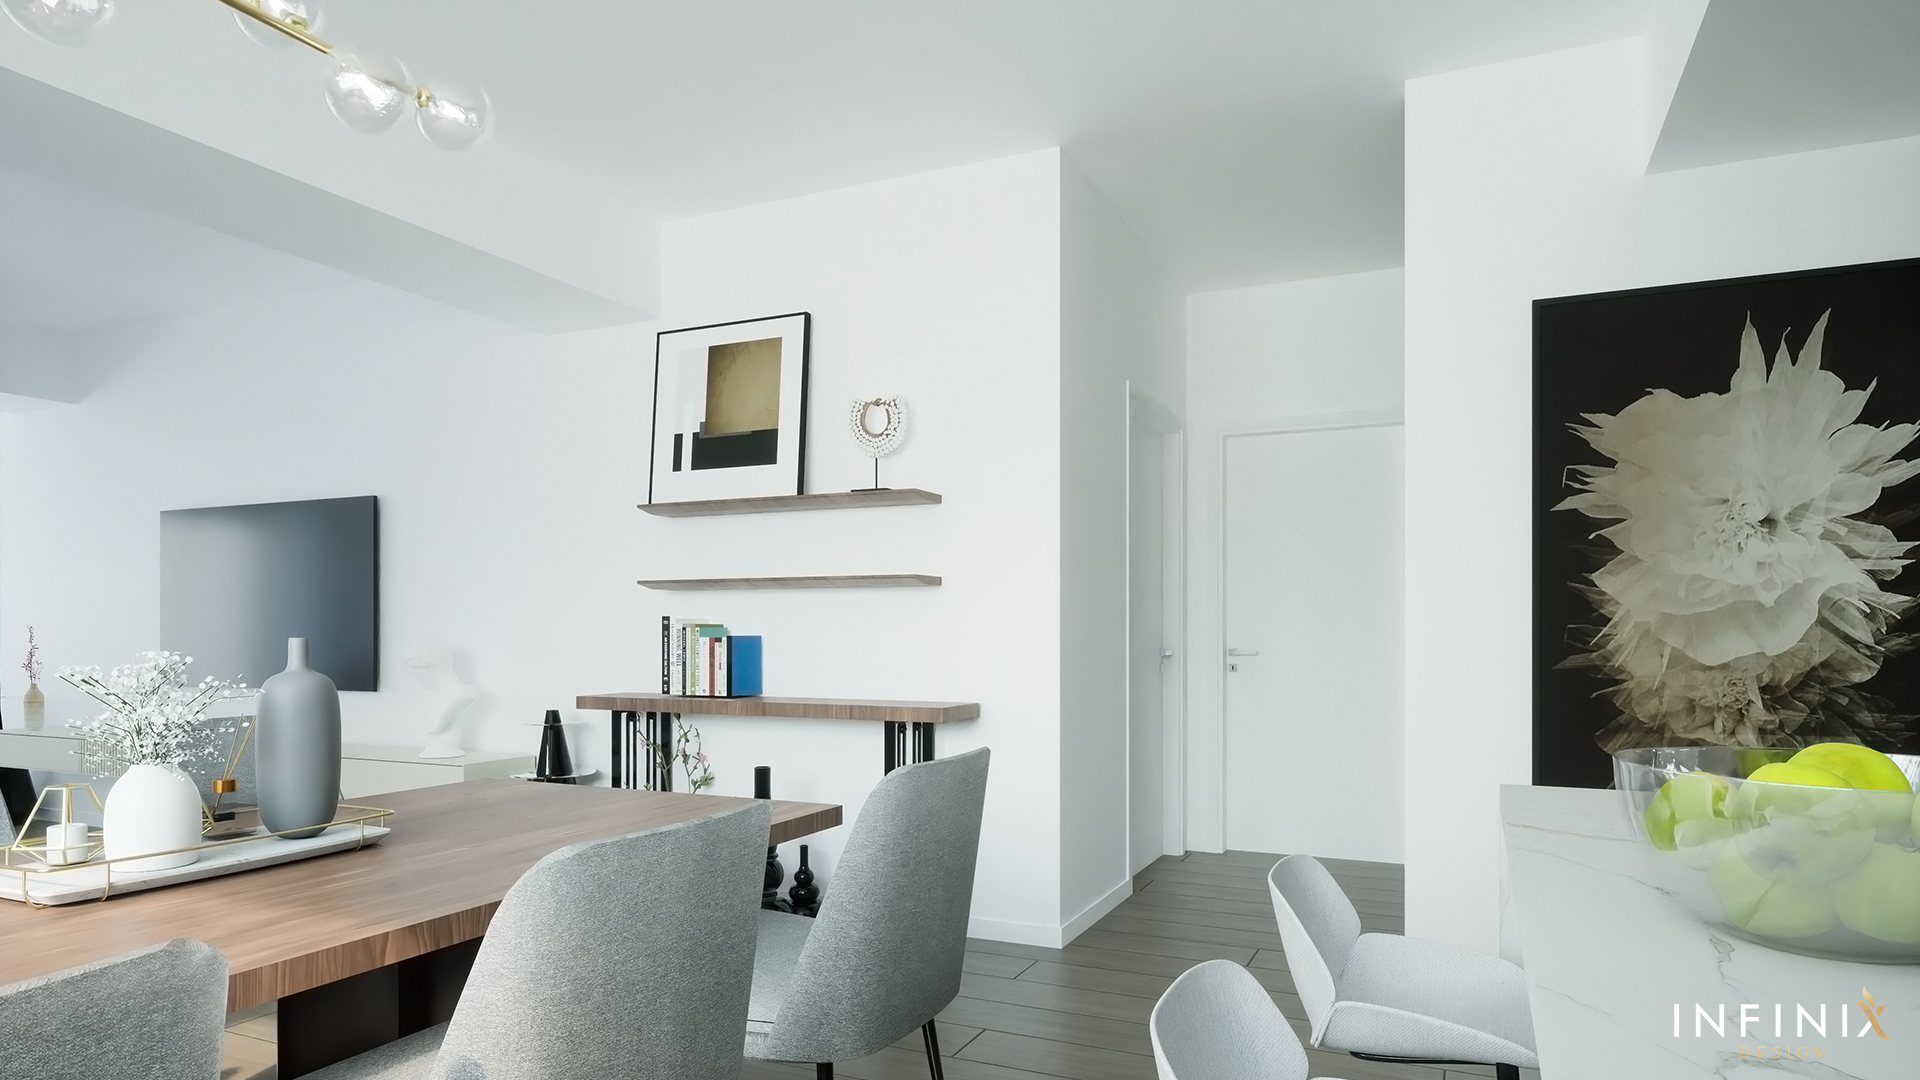 012.16_Infinix_design_interior_apartament